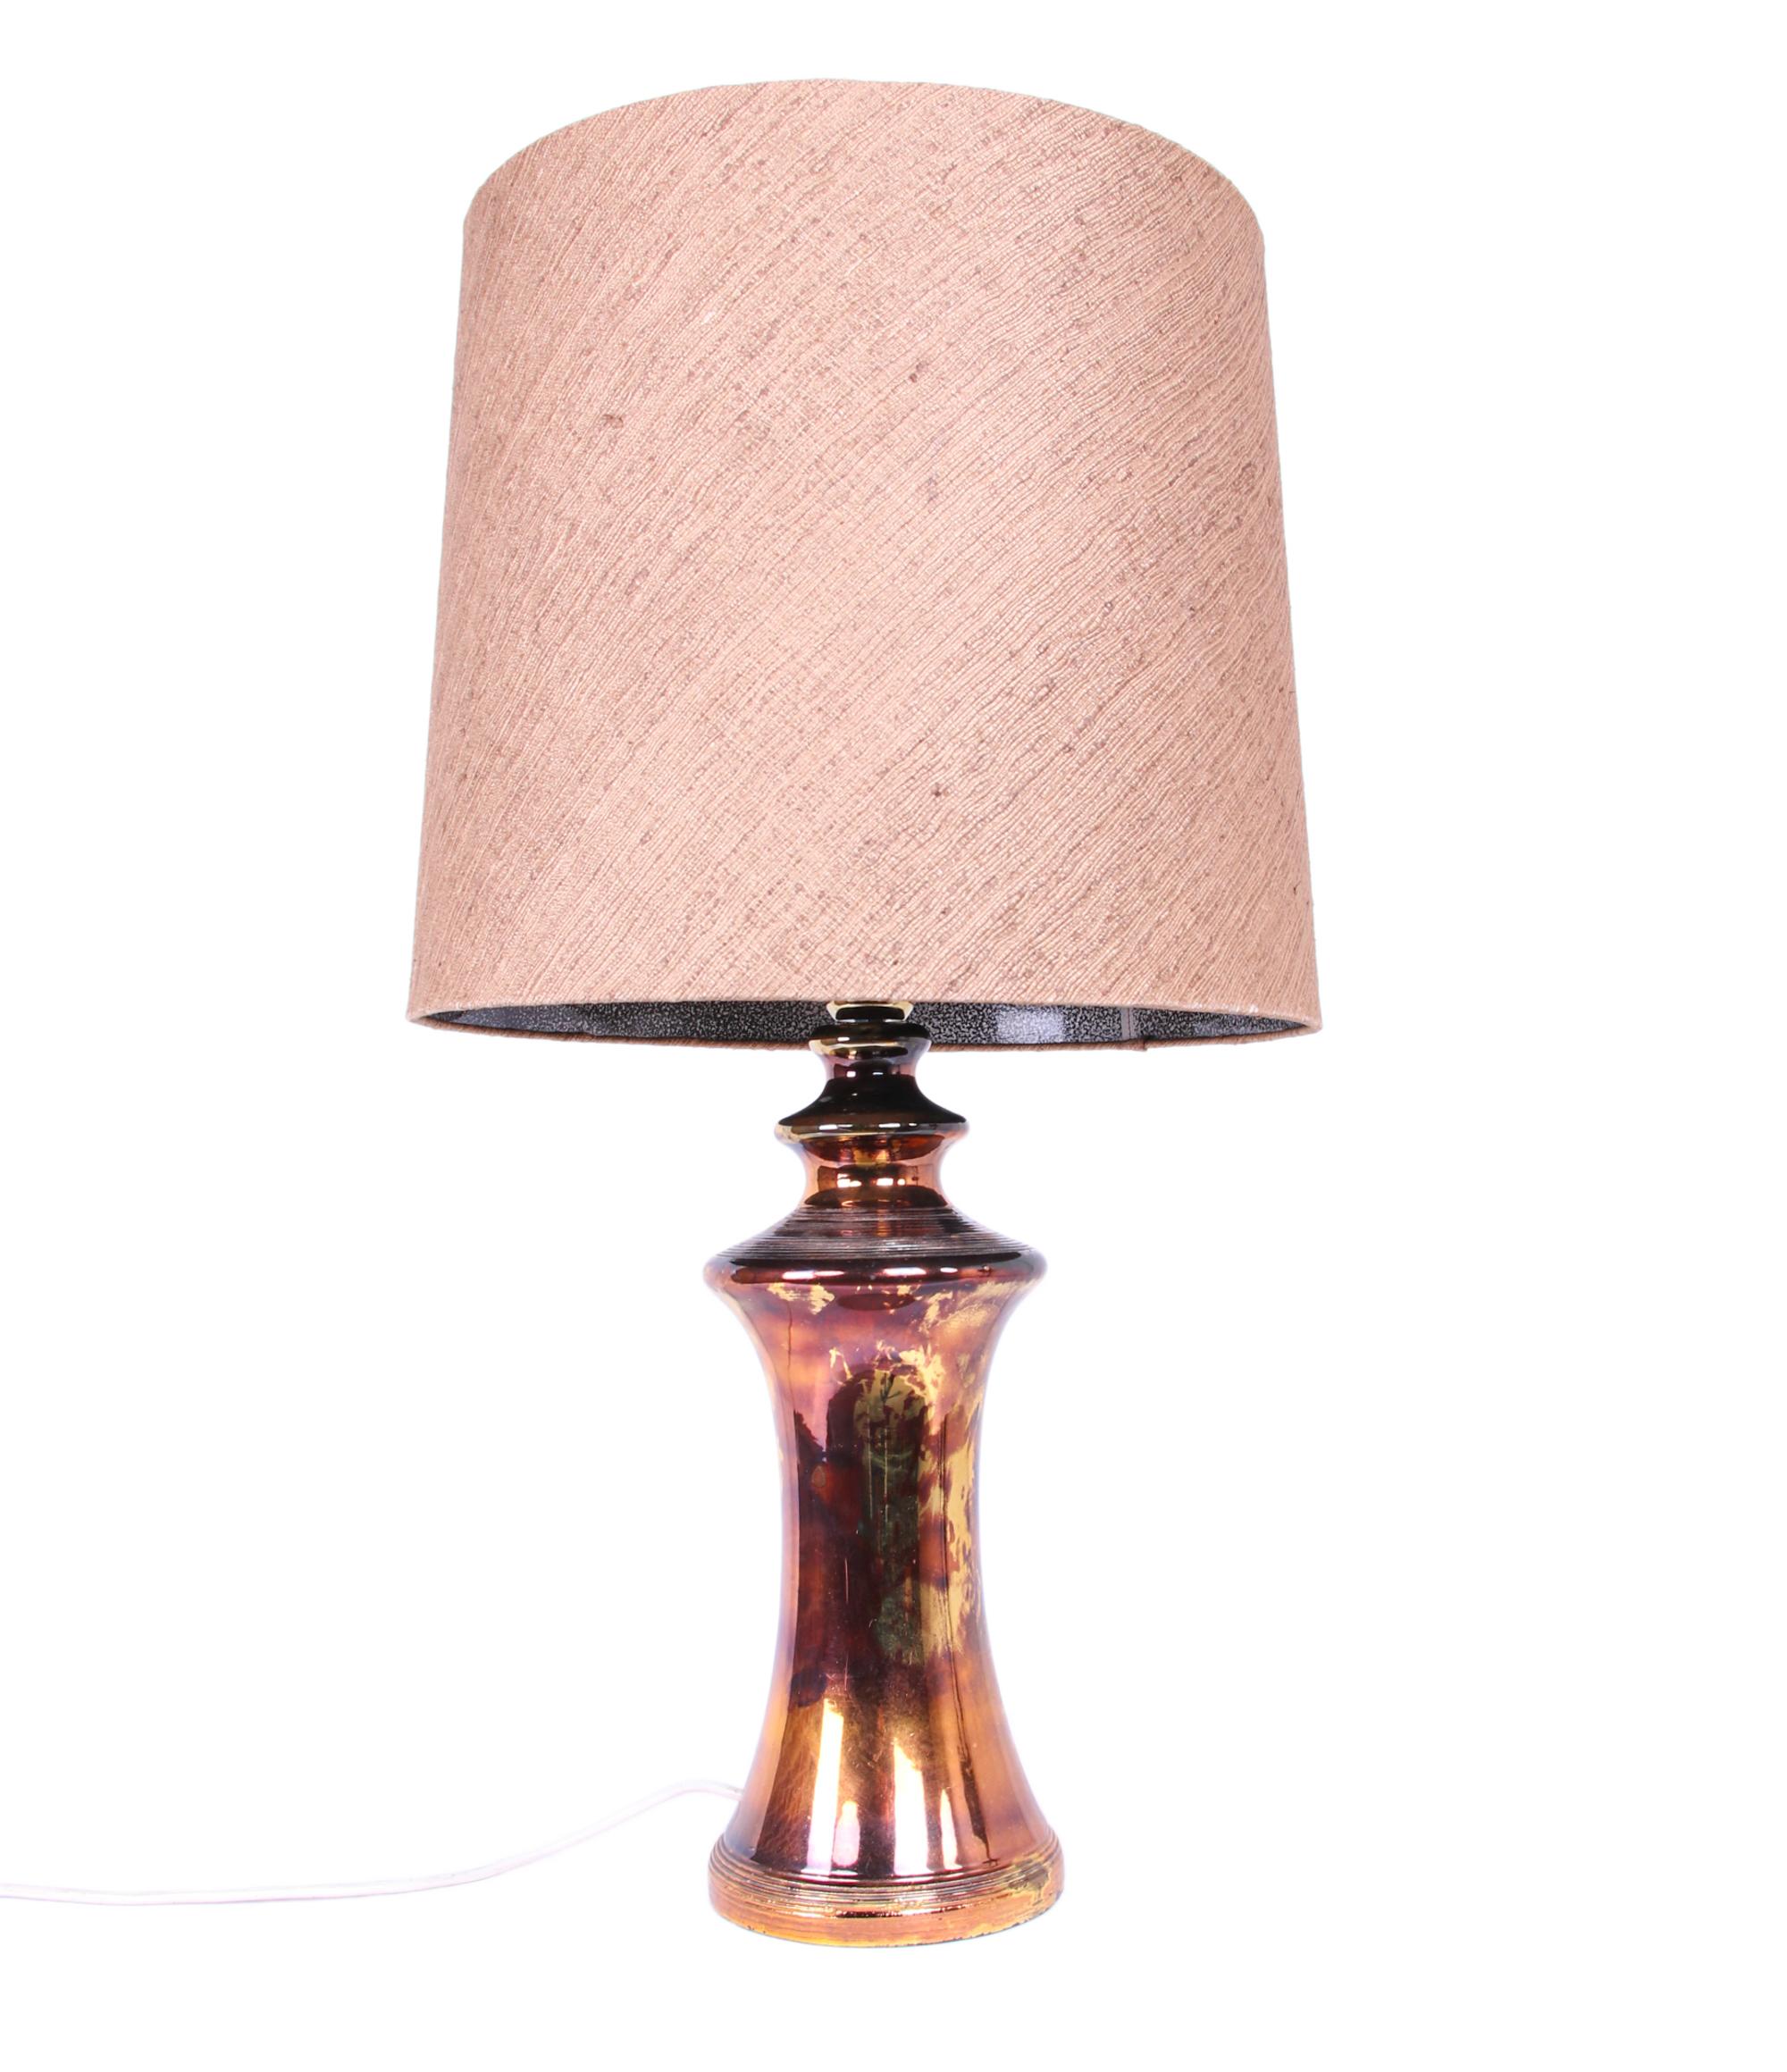 Exceptionnelle lampe de table artisanale de Bitossi, Italie, années 1960. Cette grande lampe en céramique recouverte d'une glaçure bronze et or est accompagnée de son abat-jour en soie d'origine. Avec ce luminaire, vous faites une déclaration claire